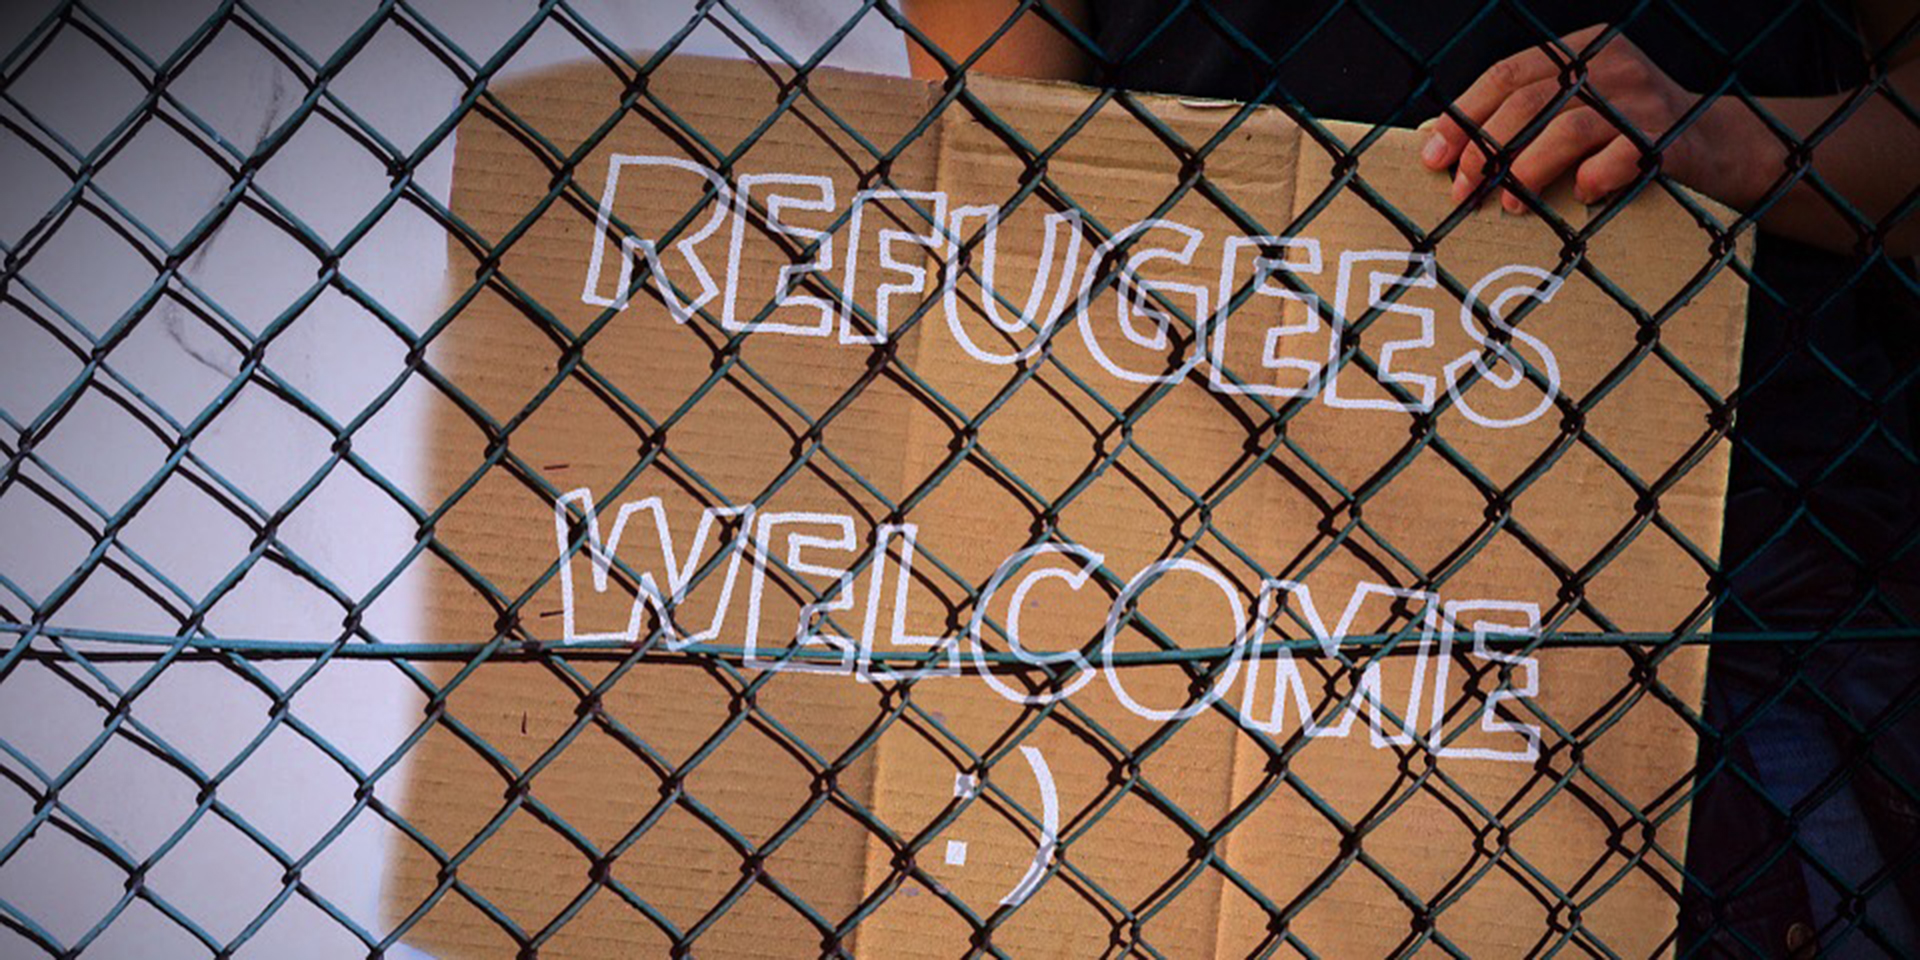 Plakat aus Pappe 'Refugees welcome' hinter einem Zaun